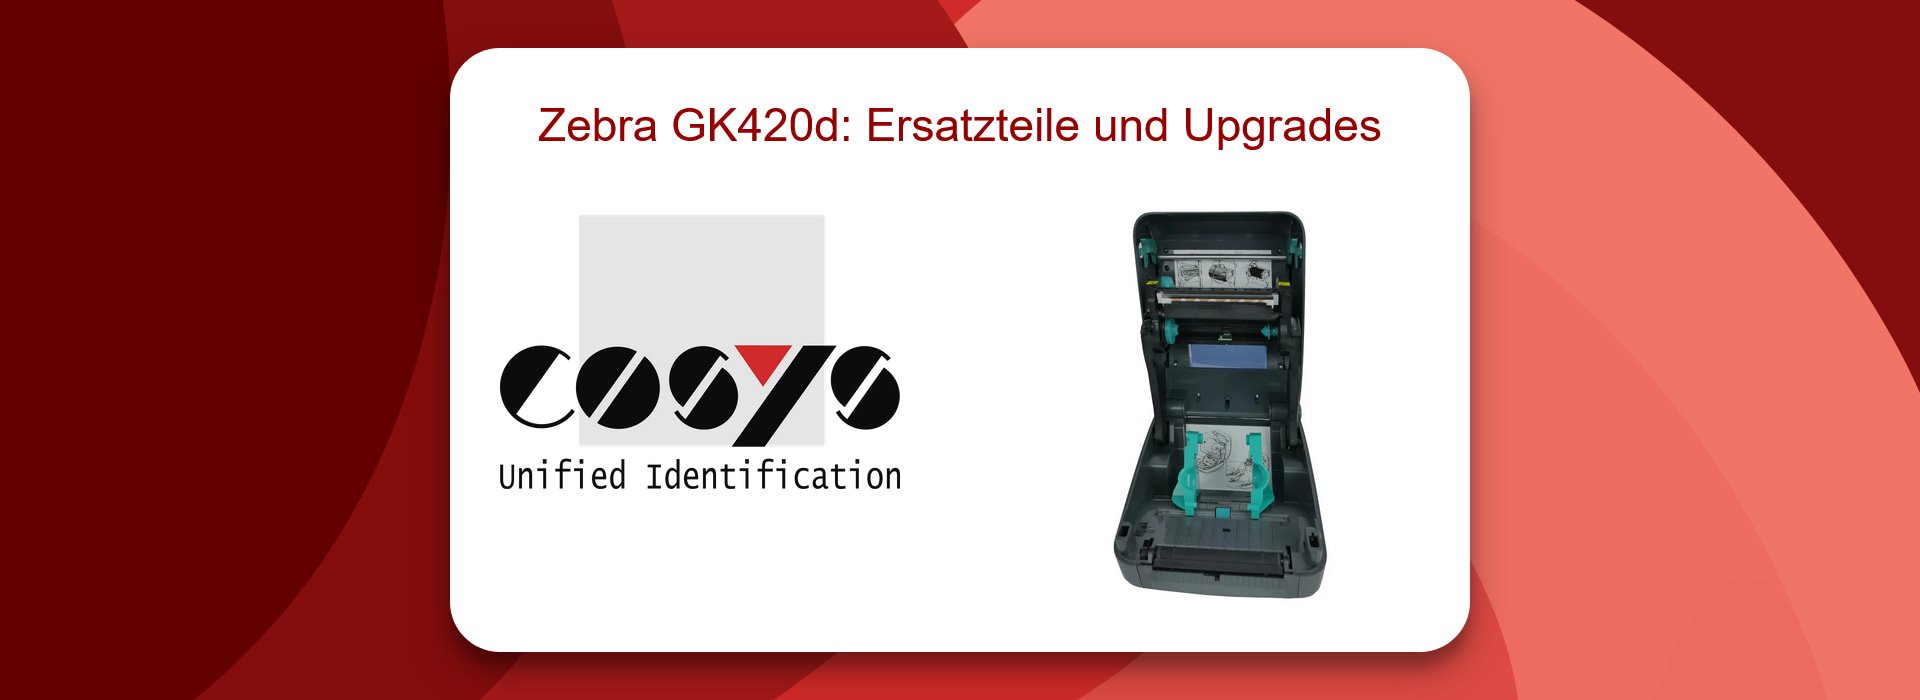 Zebra GK420d: Ersatzteile und Upgrades